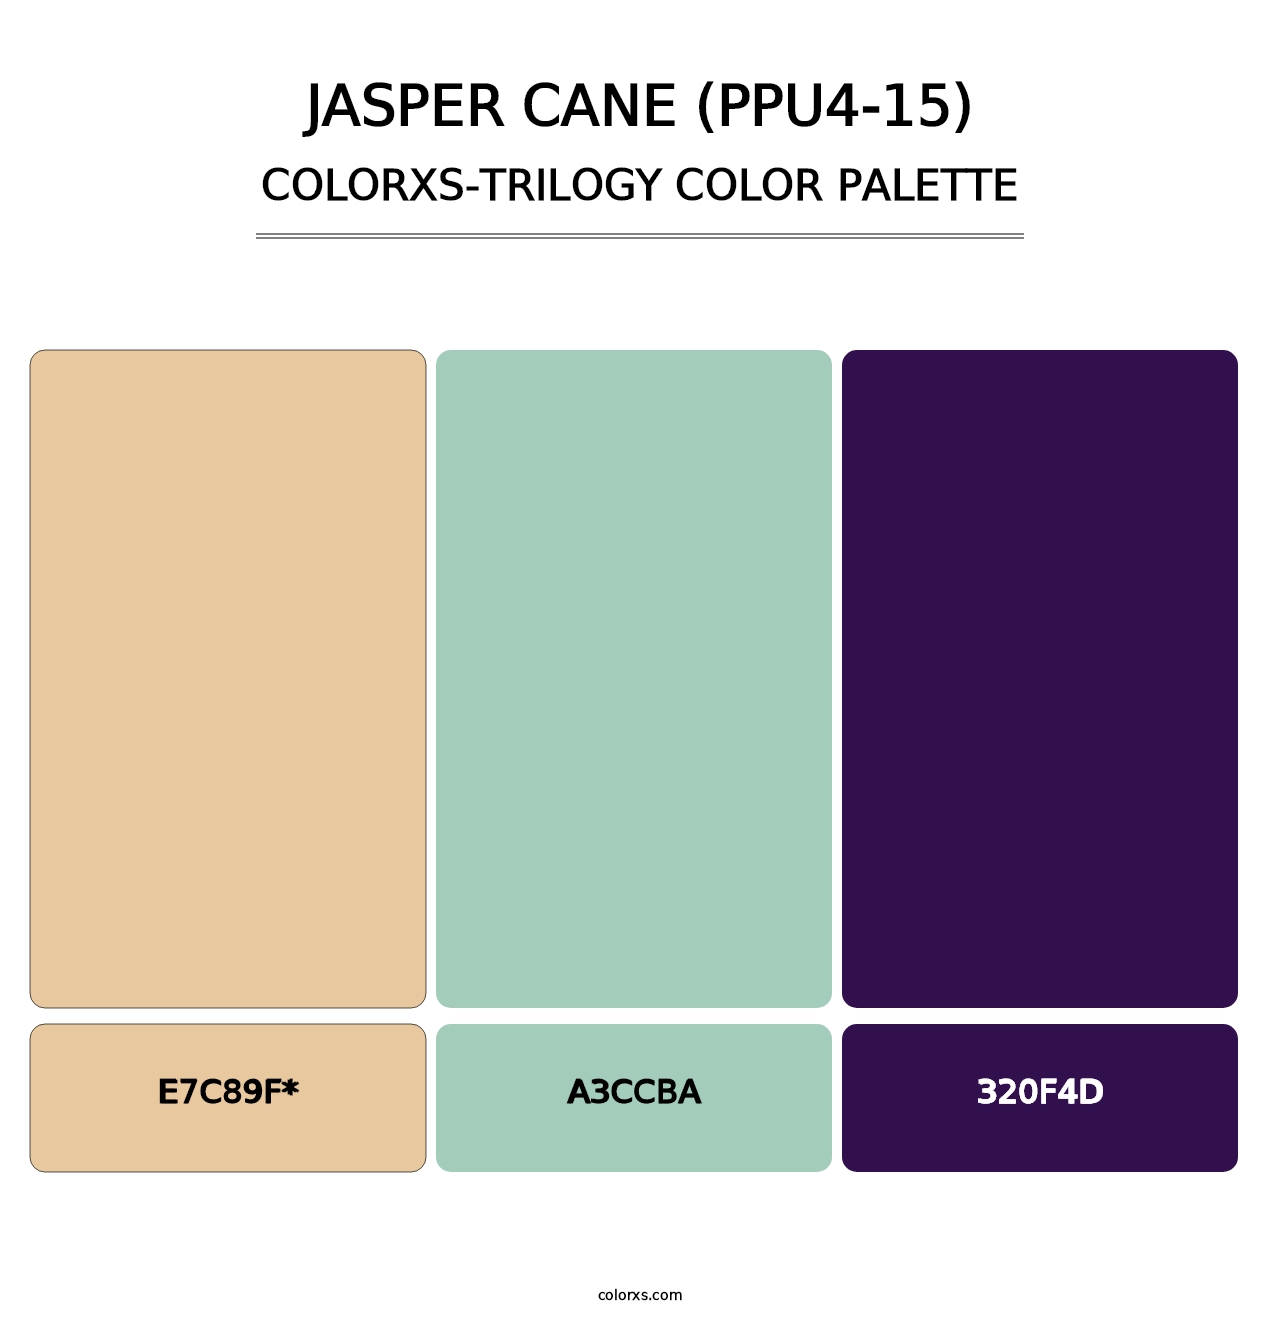 Jasper Cane (PPU4-15) - Colorxs Trilogy Palette